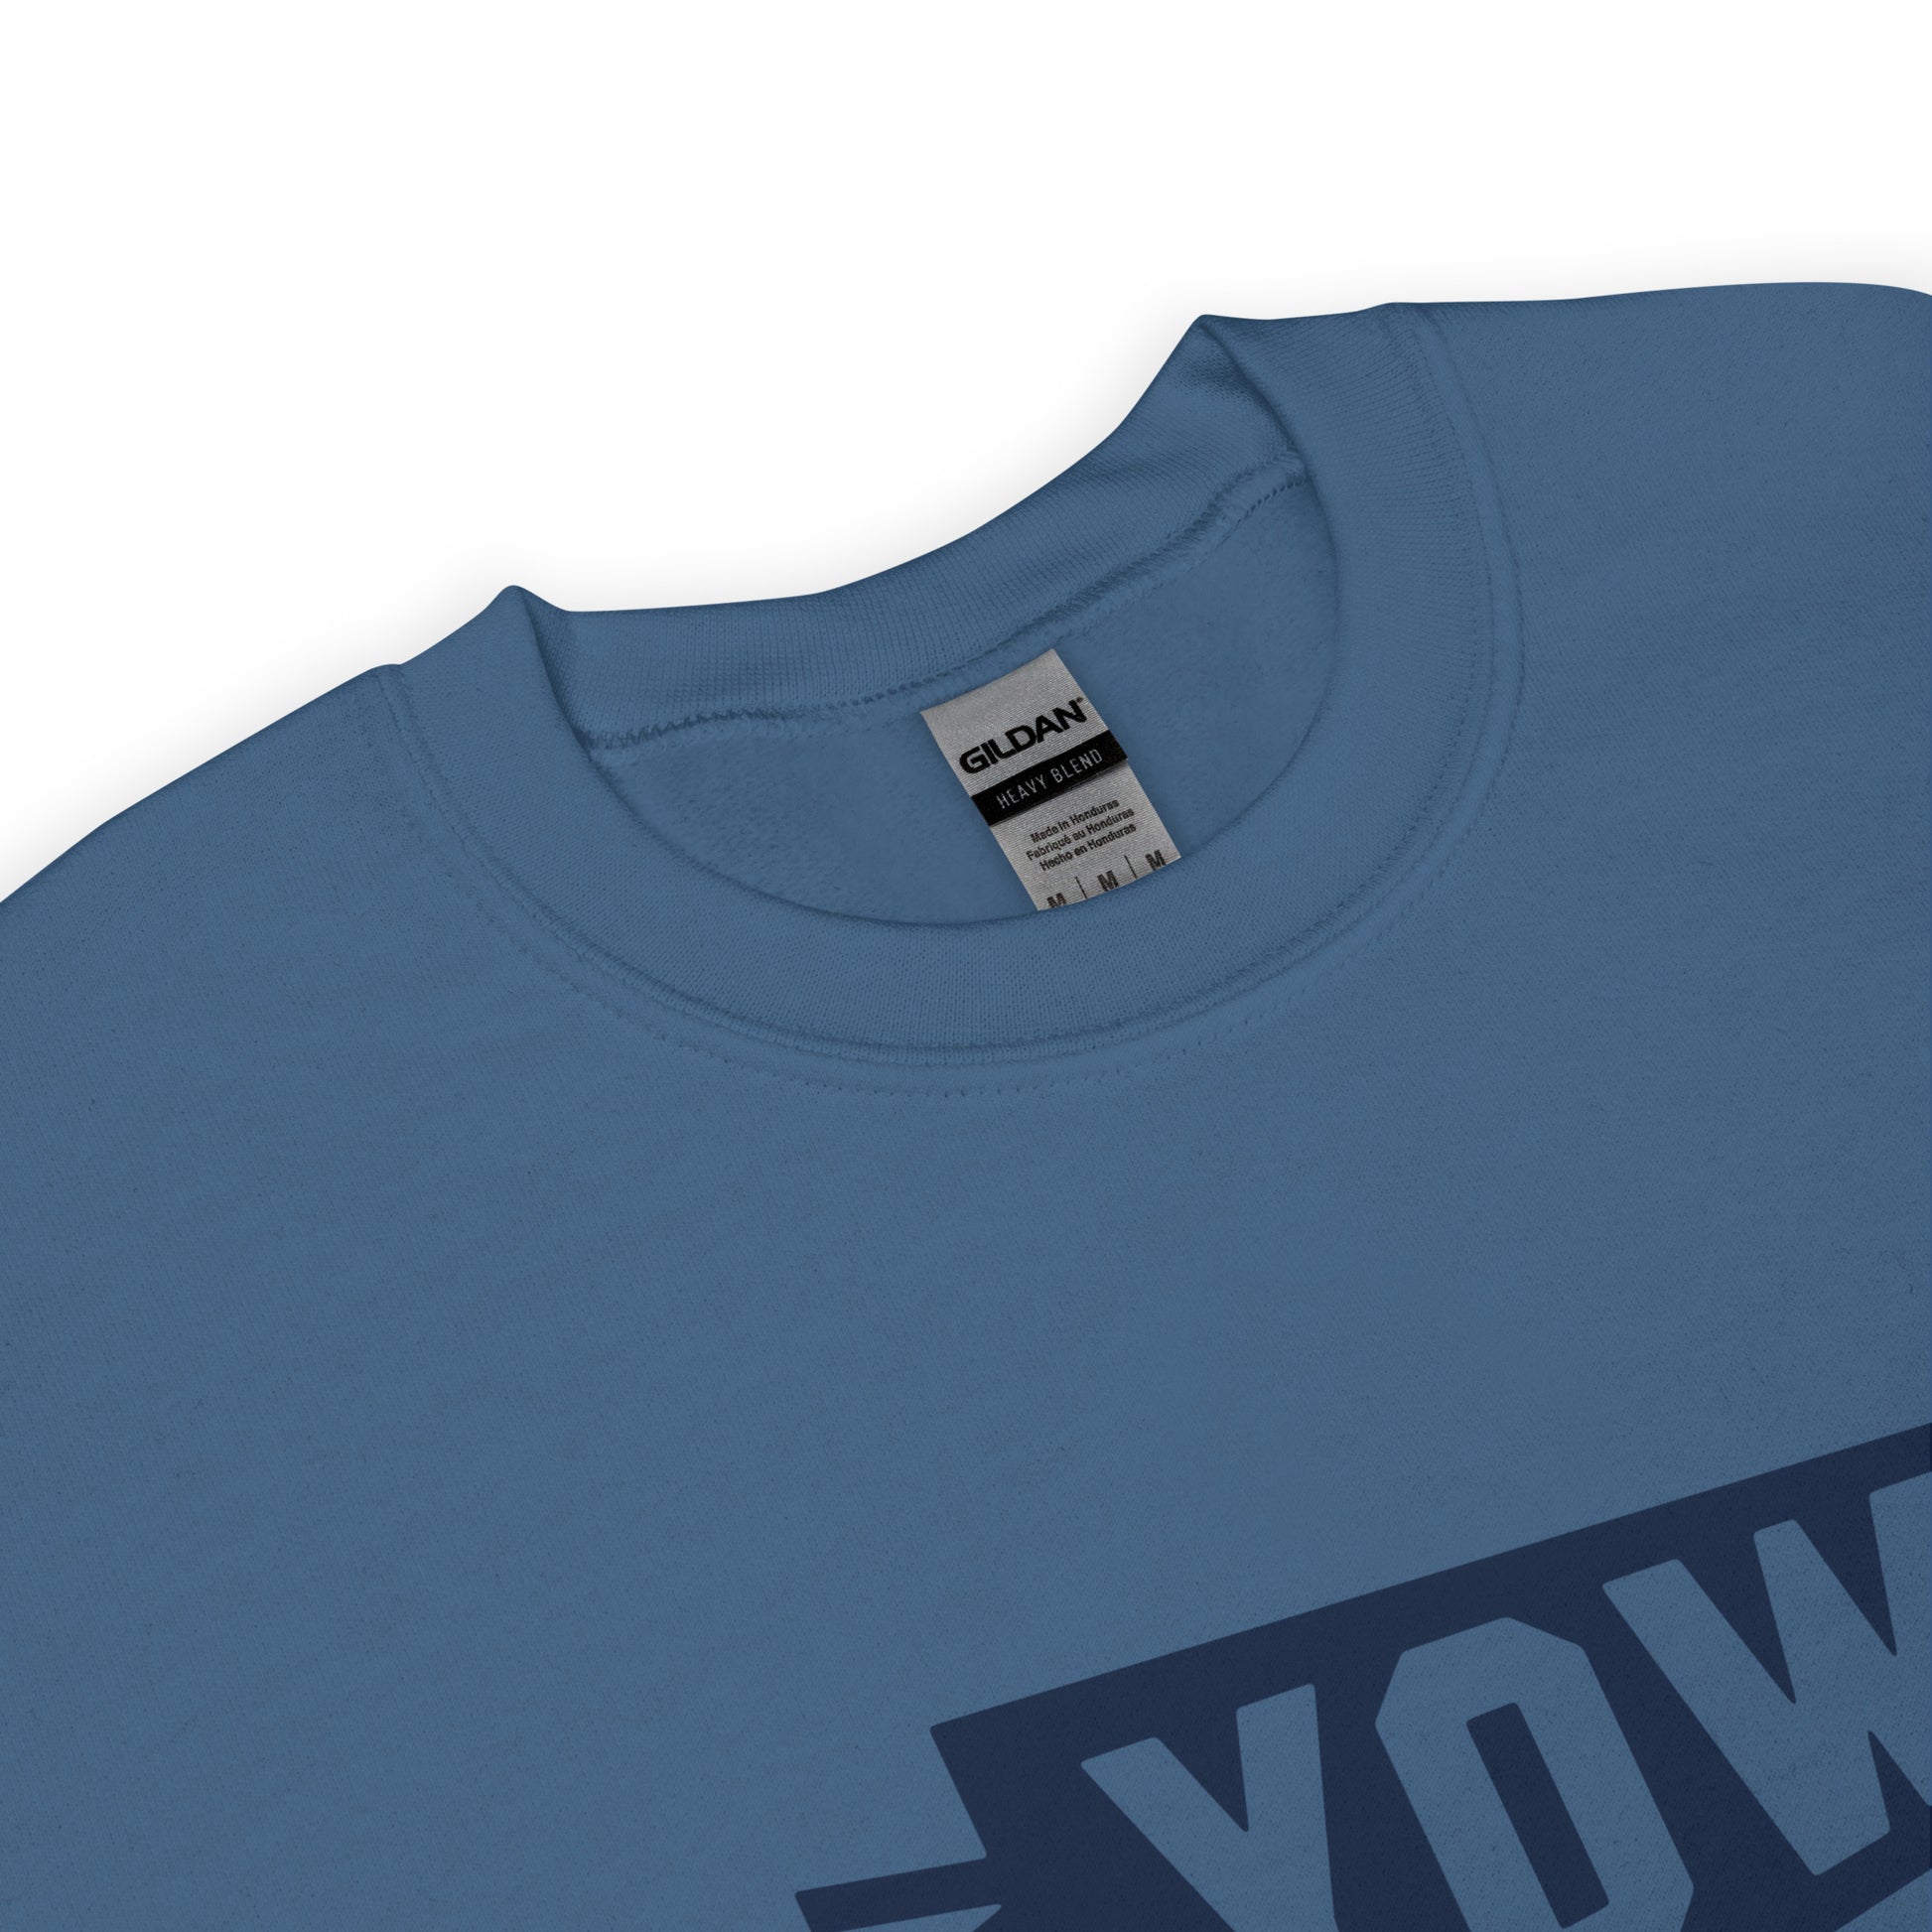 Airport Code Sweatshirt - Navy Blue Graphic • YOW Ottawa • YHM Designs - Image 04